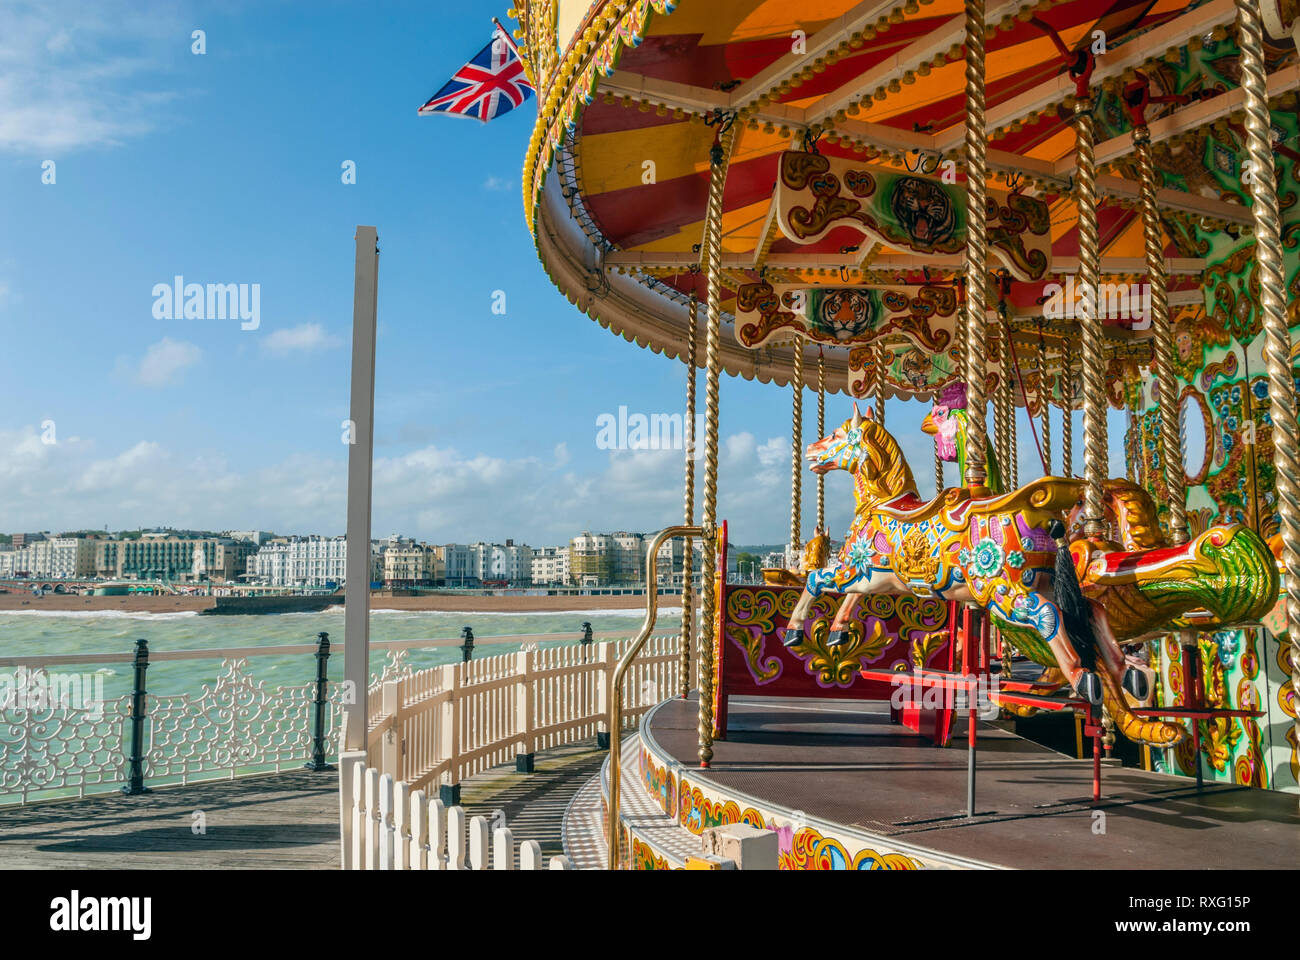 Carrousel coloré à Brighton Pier, East Sussex, Angleterre du Sud, Royaume-Uni Banque D'Images